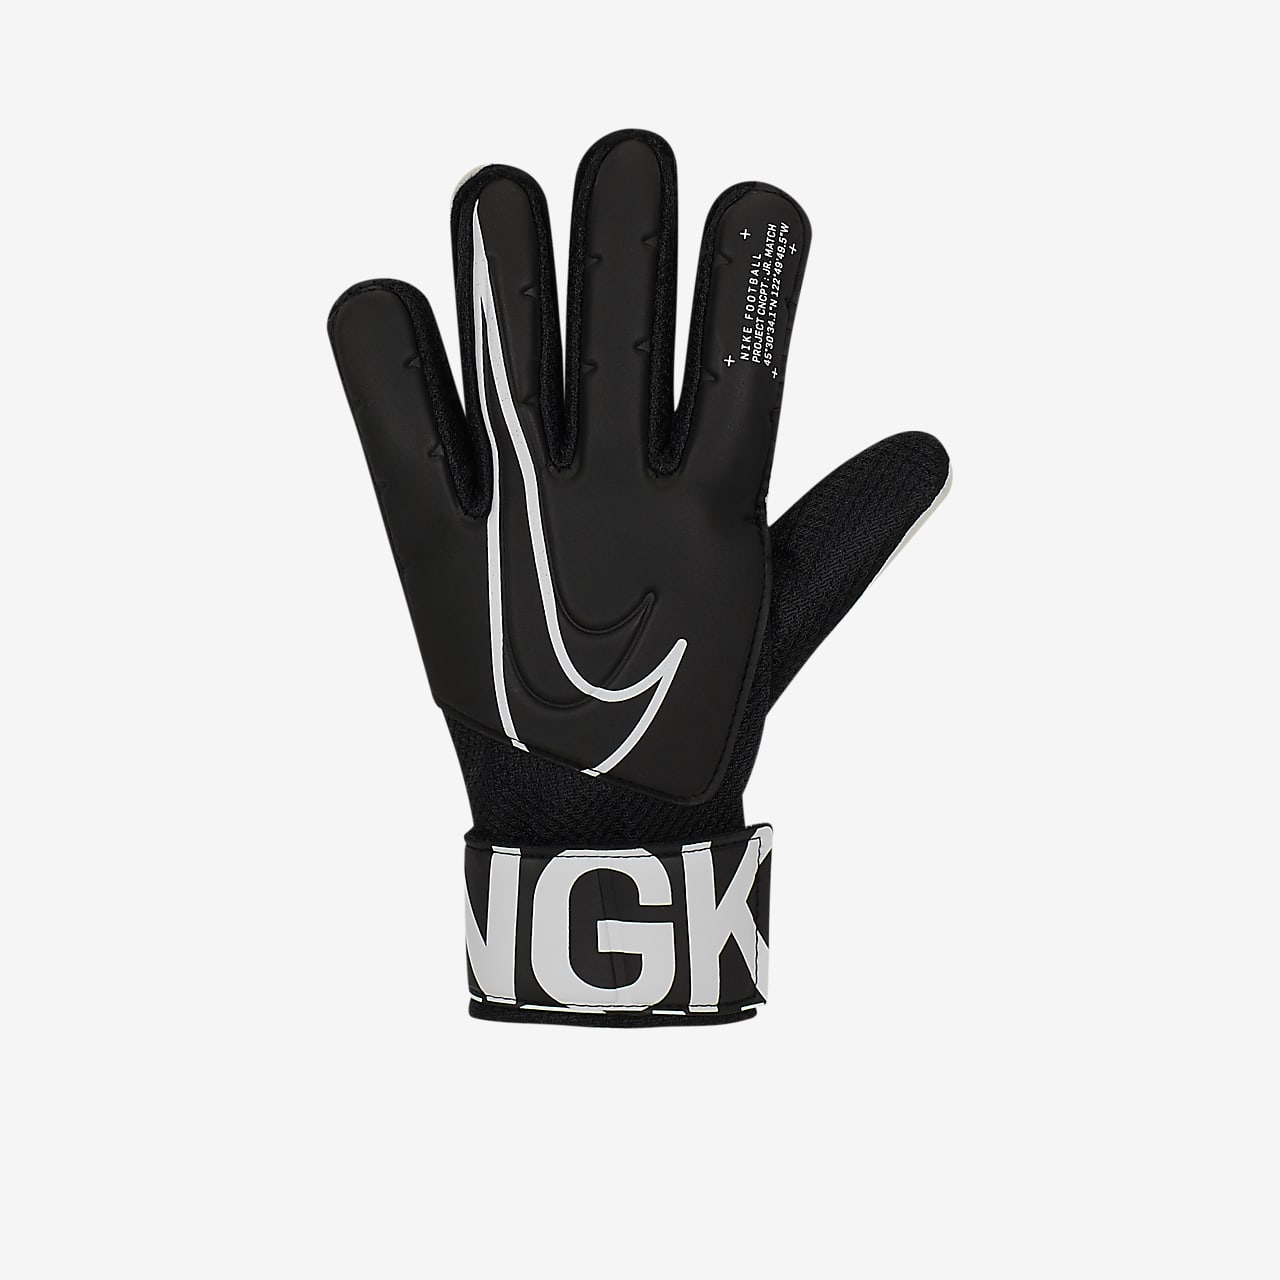 Nike公式 ナイキ ジュニア マッチ ゴールキーパー キッズ サッカーグローブ オンラインストア 通販サイト